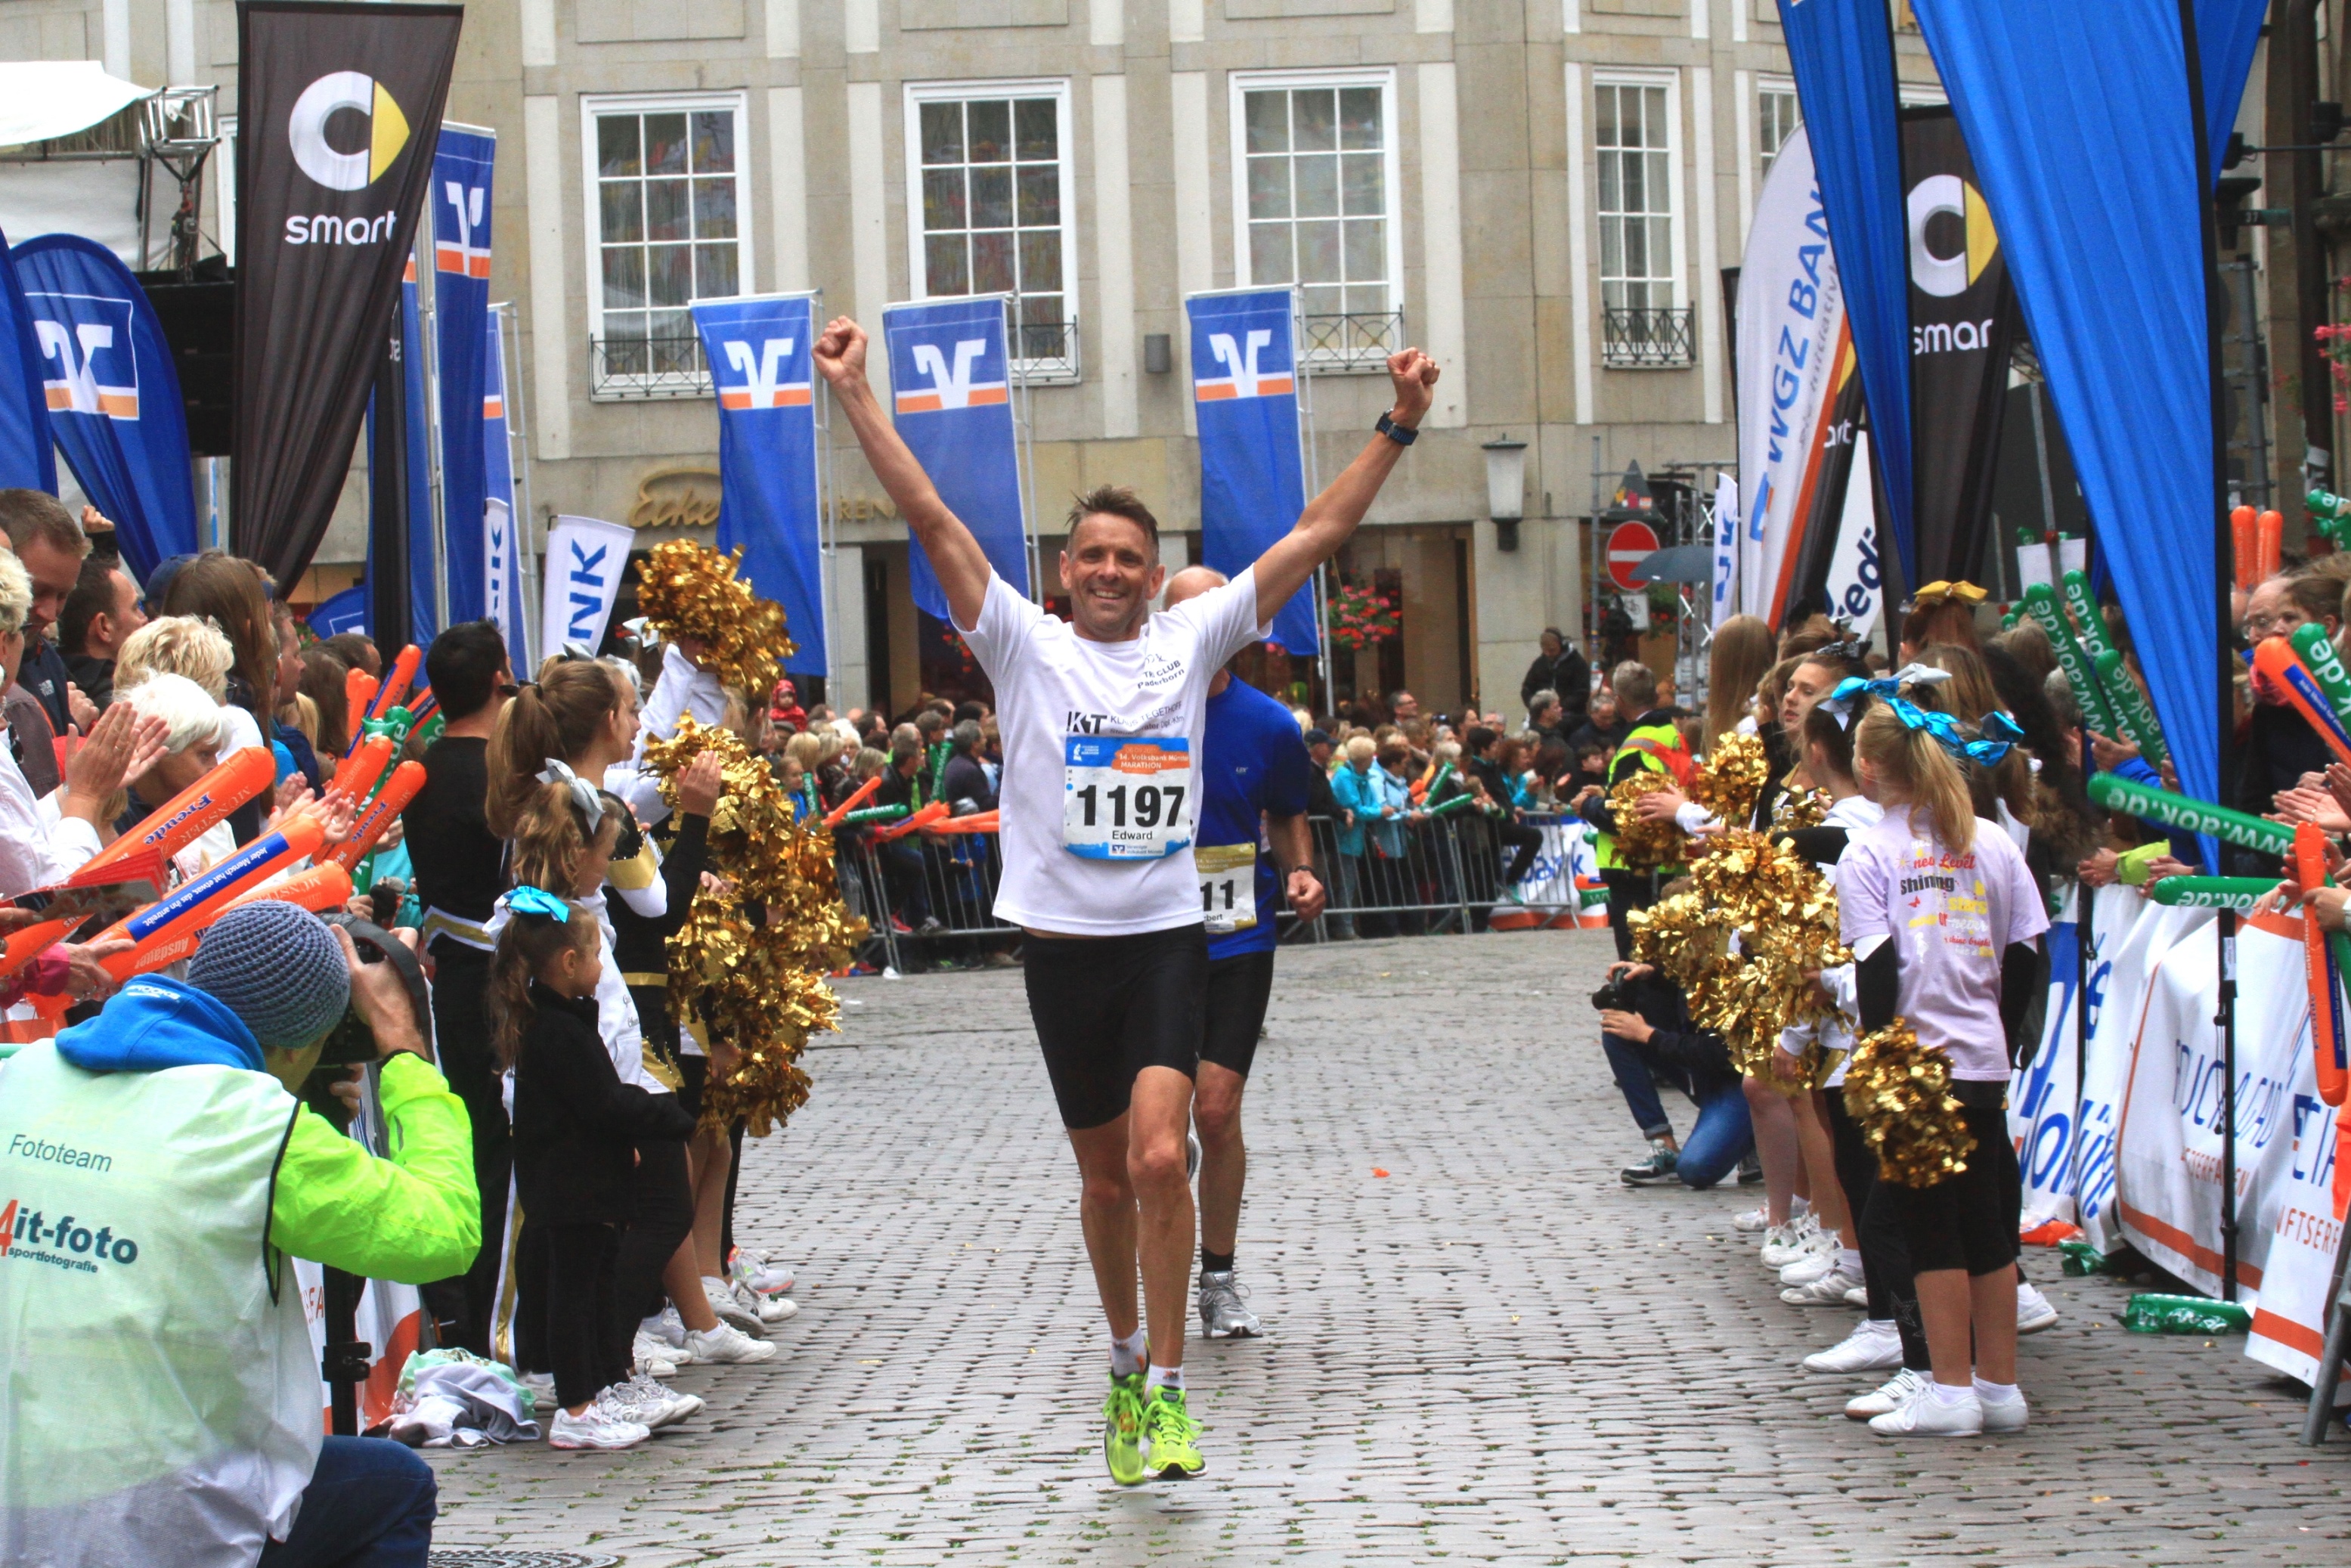 2. Platz für den Marathon in Münster